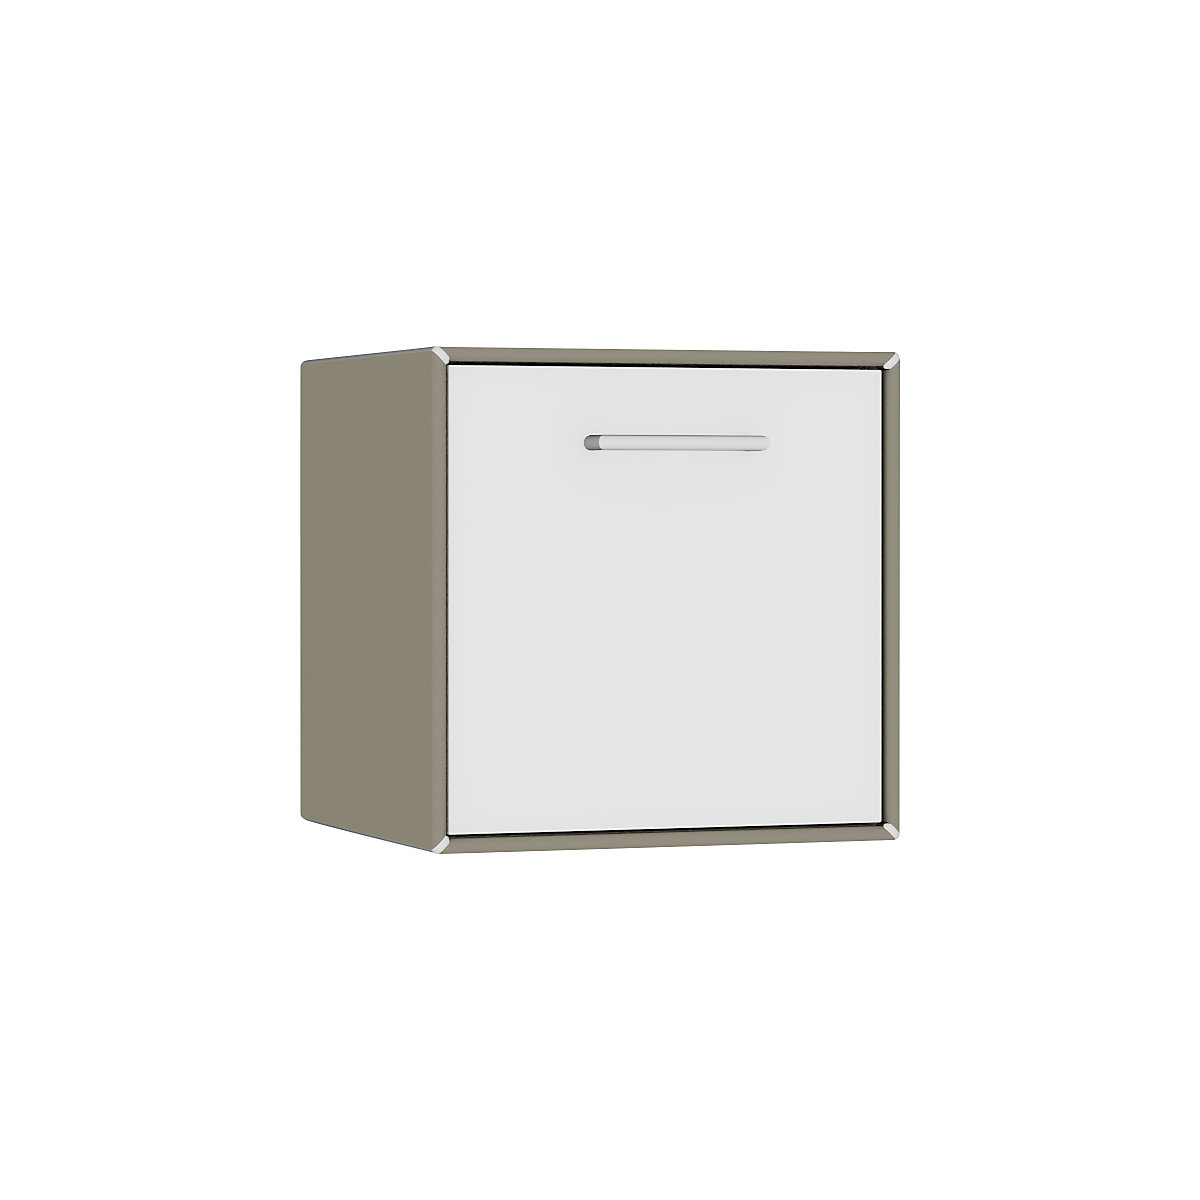 Caisson suspendu – mauser, 1 casier bar, largeur 385 mm, gris beige / blanc pur-4